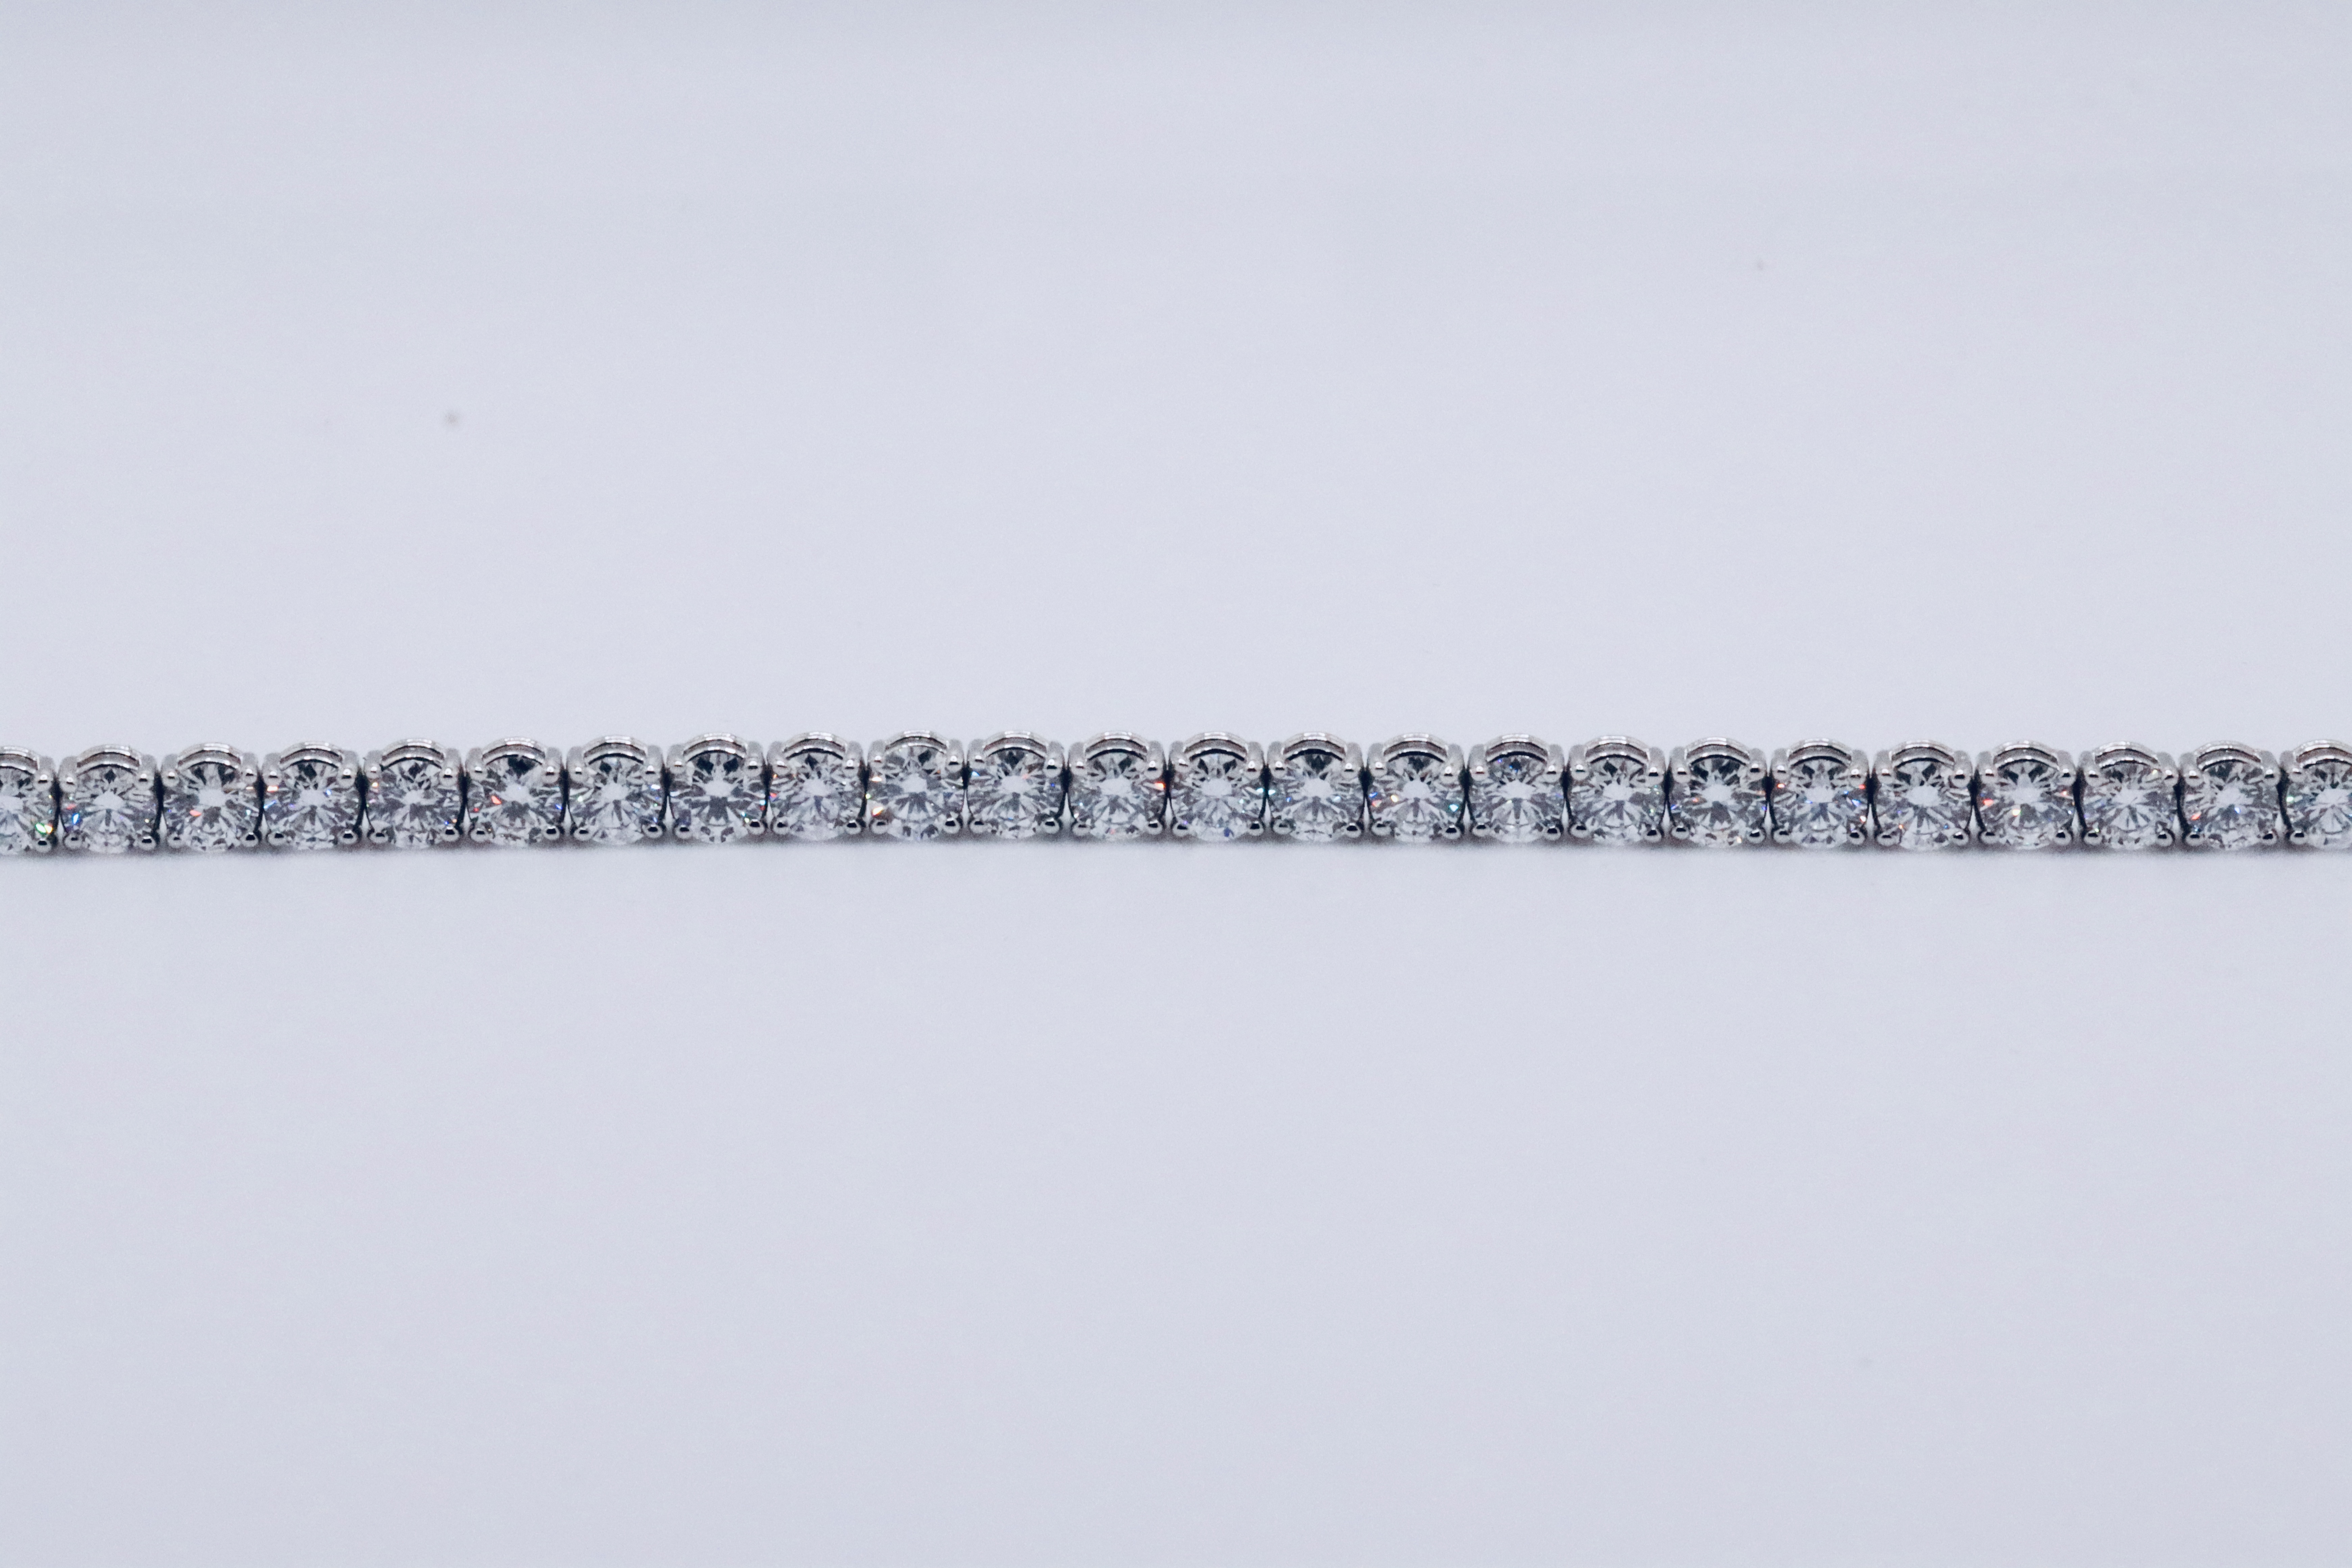 Round Brilliant Cut 14 Carat Diamond Tennis Bracelet D Colour VVS Clarity - 18Kt White Gold - IGI - Image 17 of 37